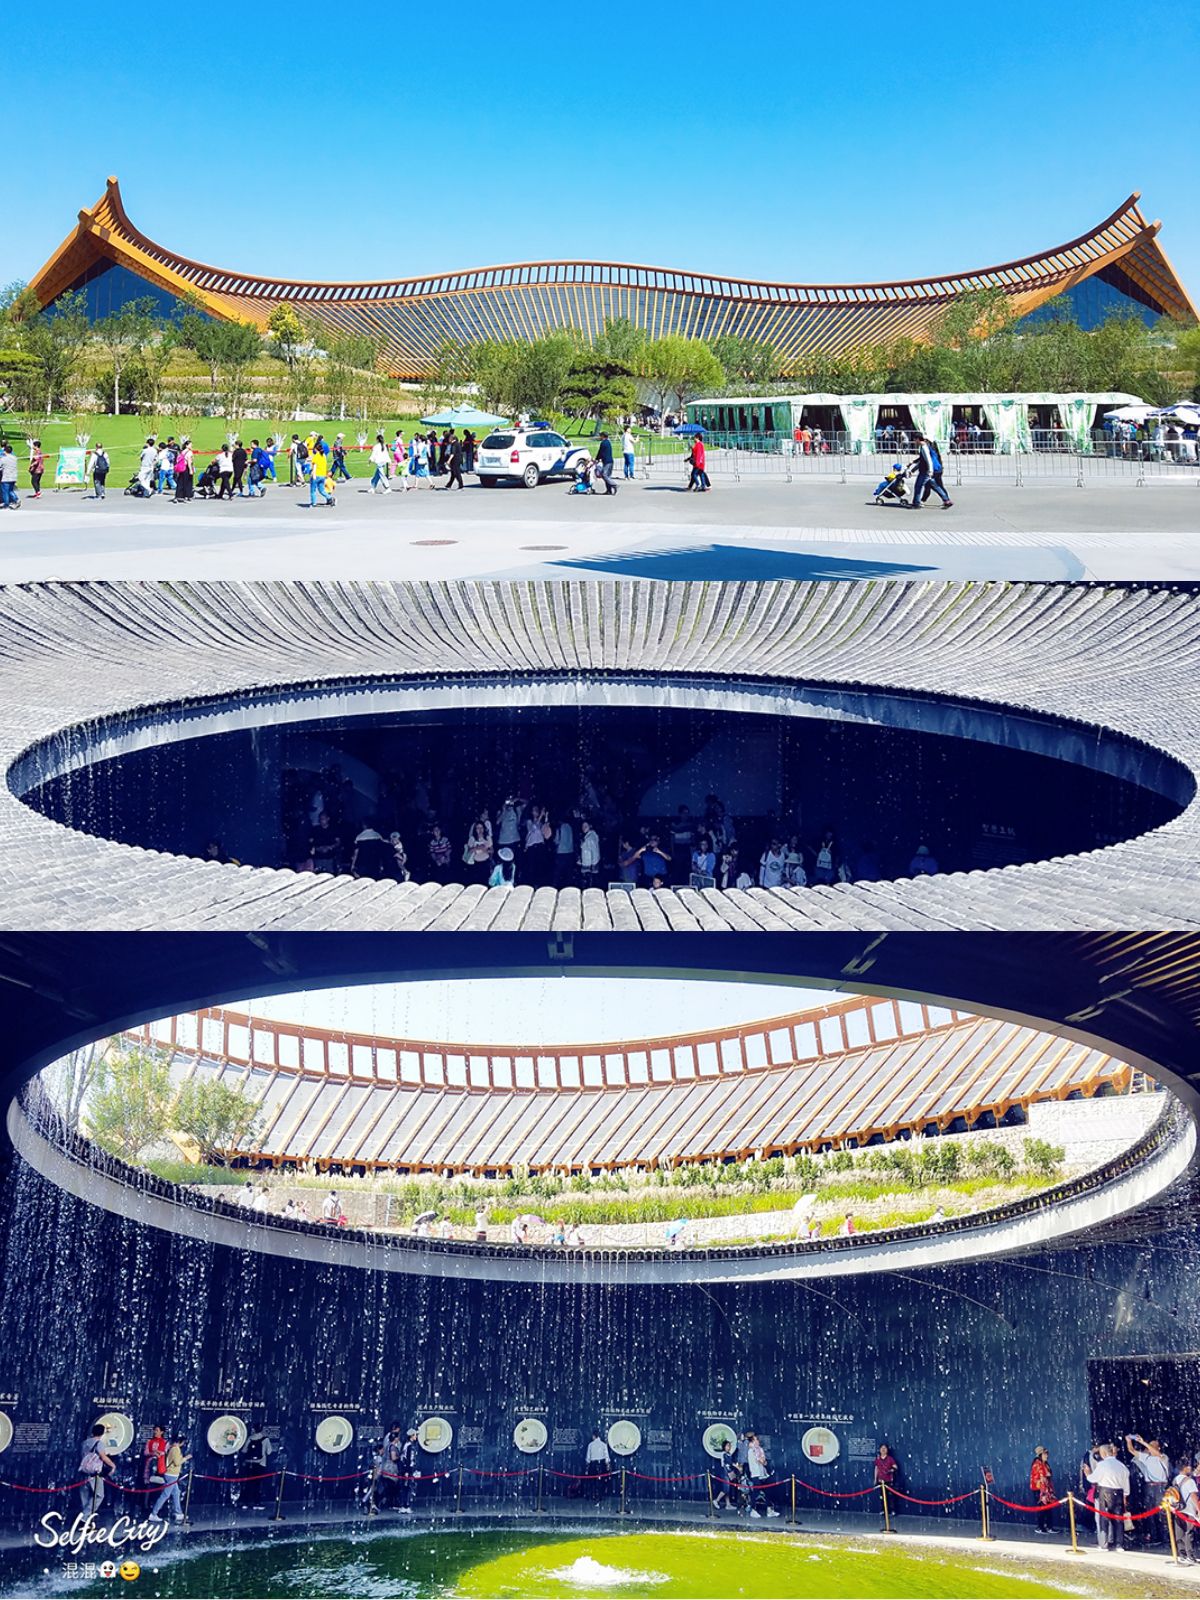 《2019中国北京世界园艺博览会~建筑篇》  世园会太值得推荐了👍金秋的艳阳天把这里映射的更是美丽!